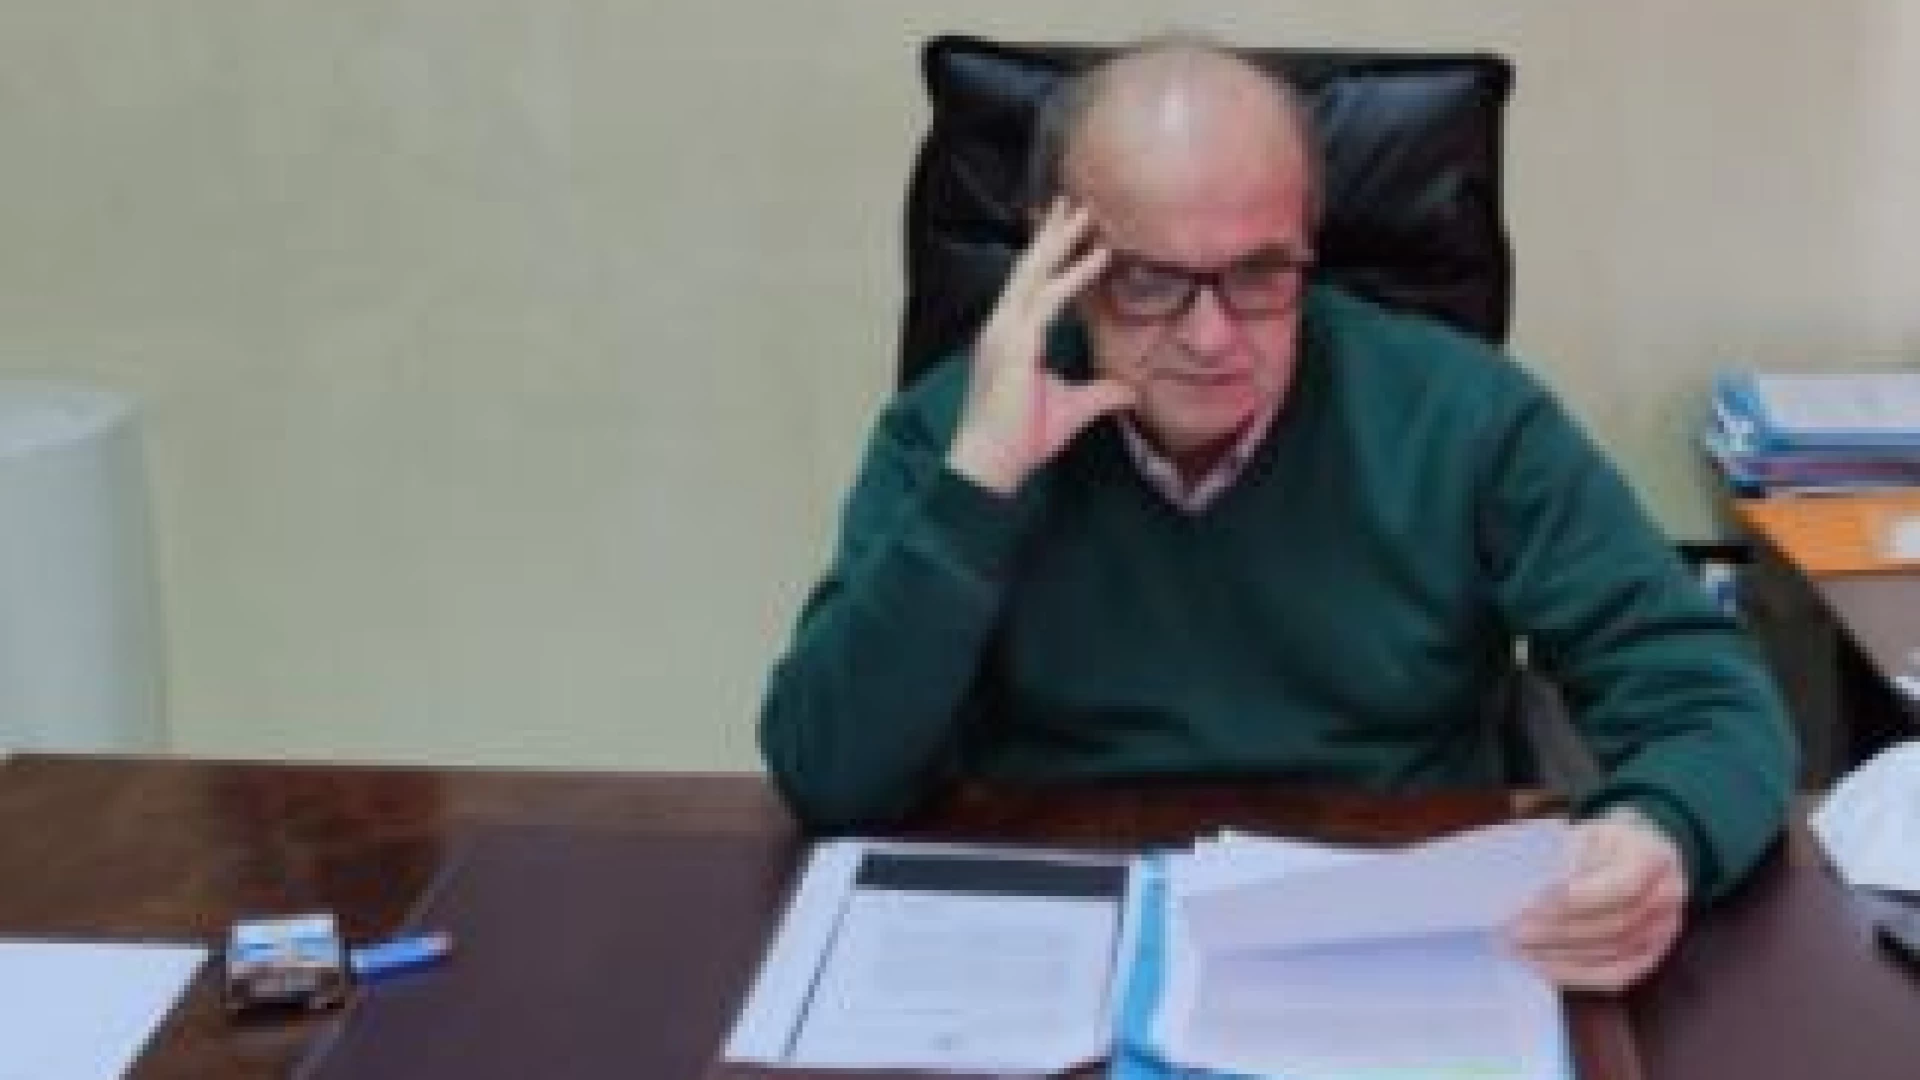 Montaquila: il sindaco Marciano Ricci proroga l'ordinanza di chiusura della scuola fino al 6 maggio. "Vanno terminate le indagini epidemiologiche".